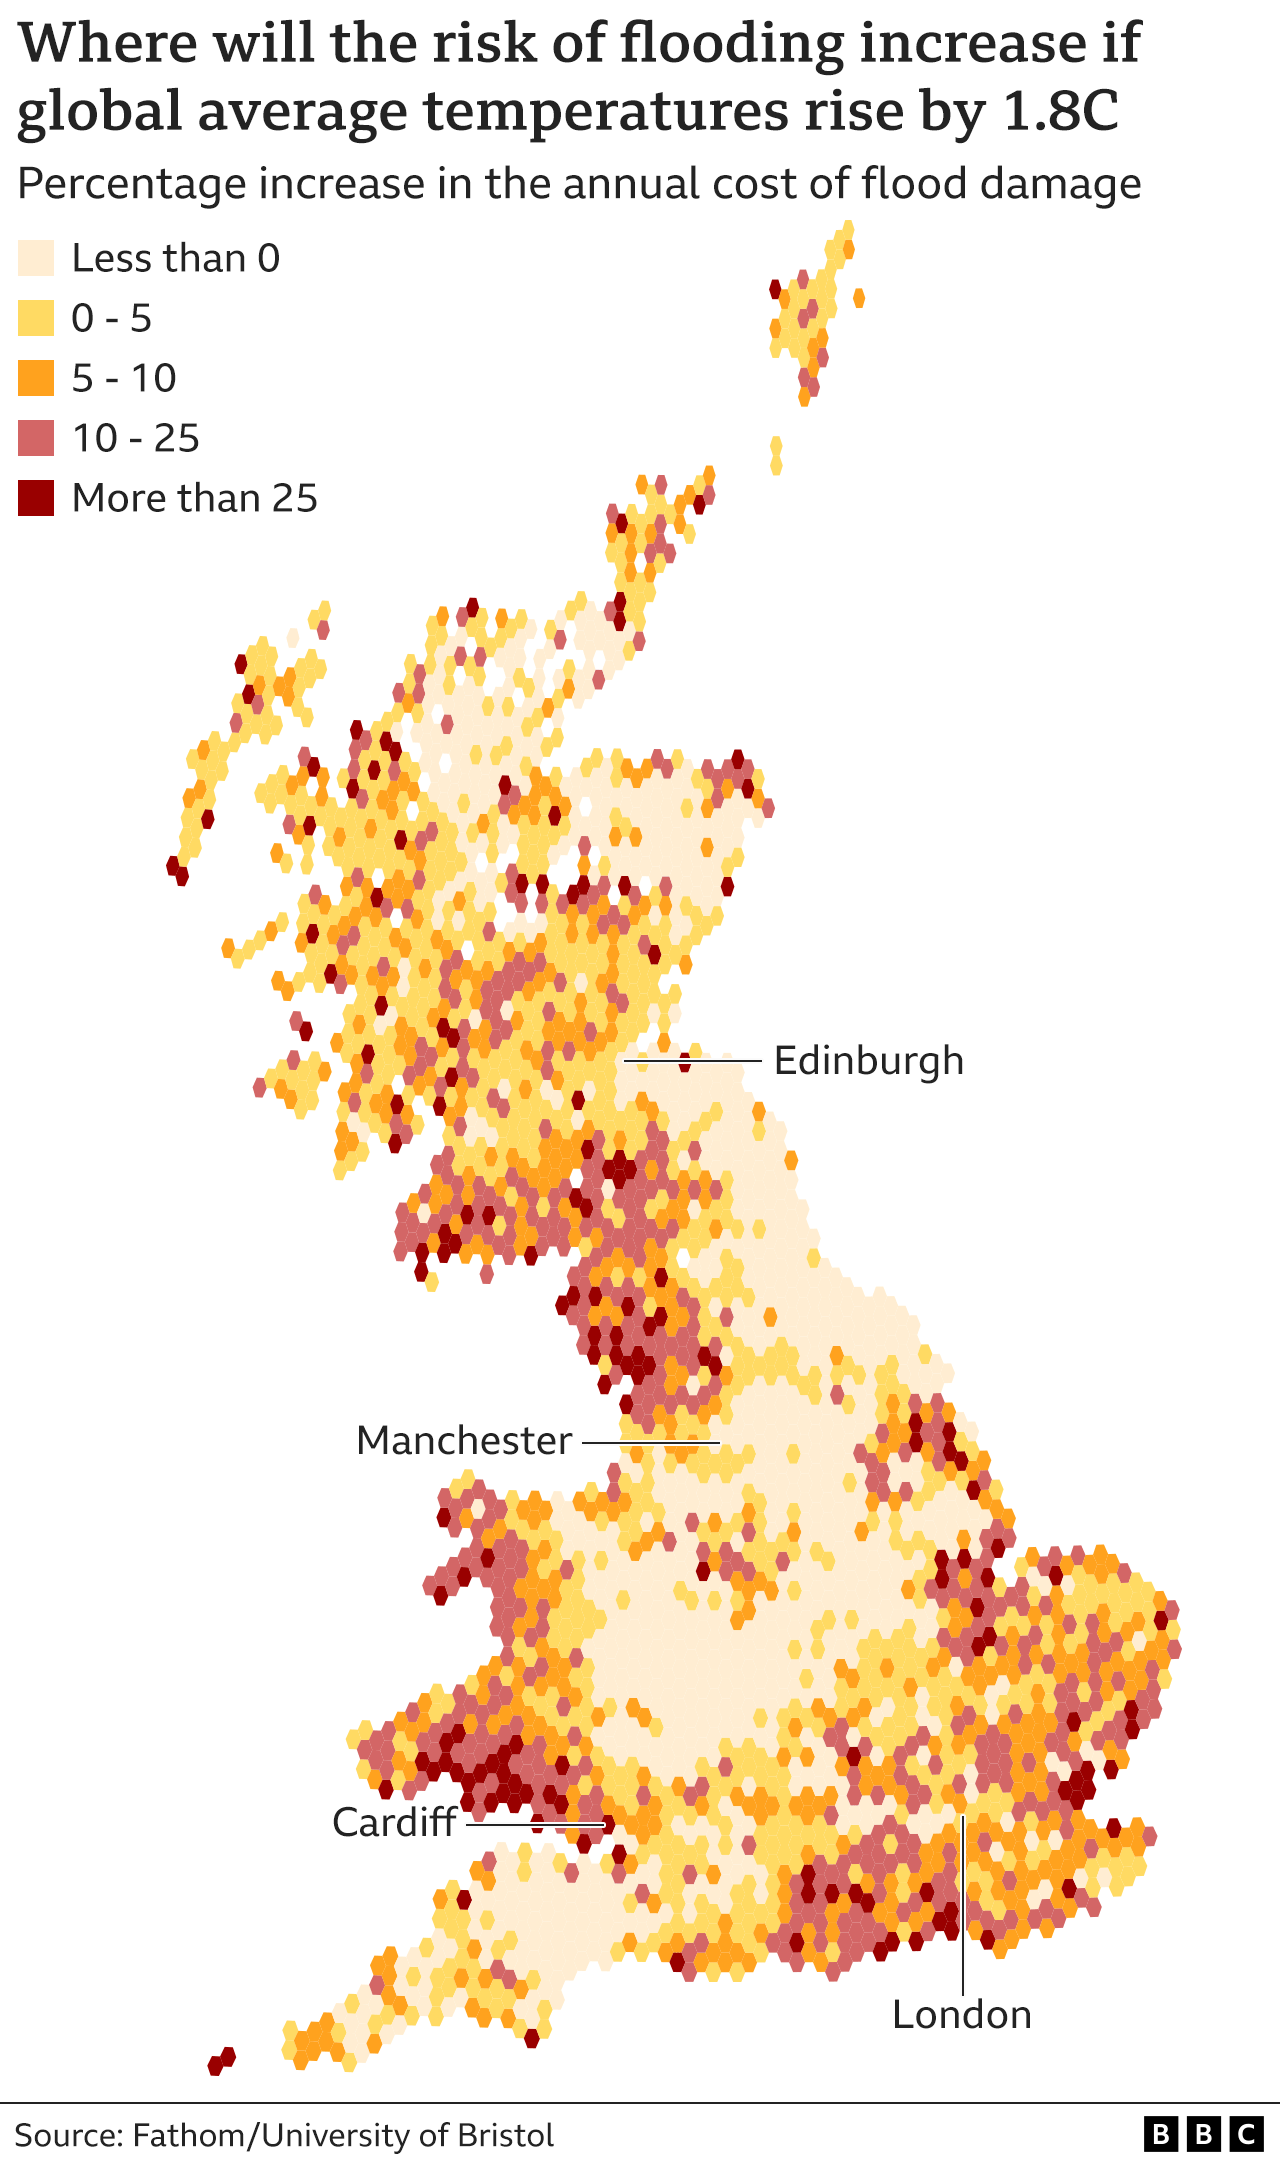 Карта, показывающая увеличение и уменьшение риска наводнений в материковой части Британии, с наибольшим увеличением в прибрежных районах на юге, востоке и северо-западе побережья Англии, в то время как центральная Англия и районы вблизи крупных городов, по прогнозам, не будут расти так сильно